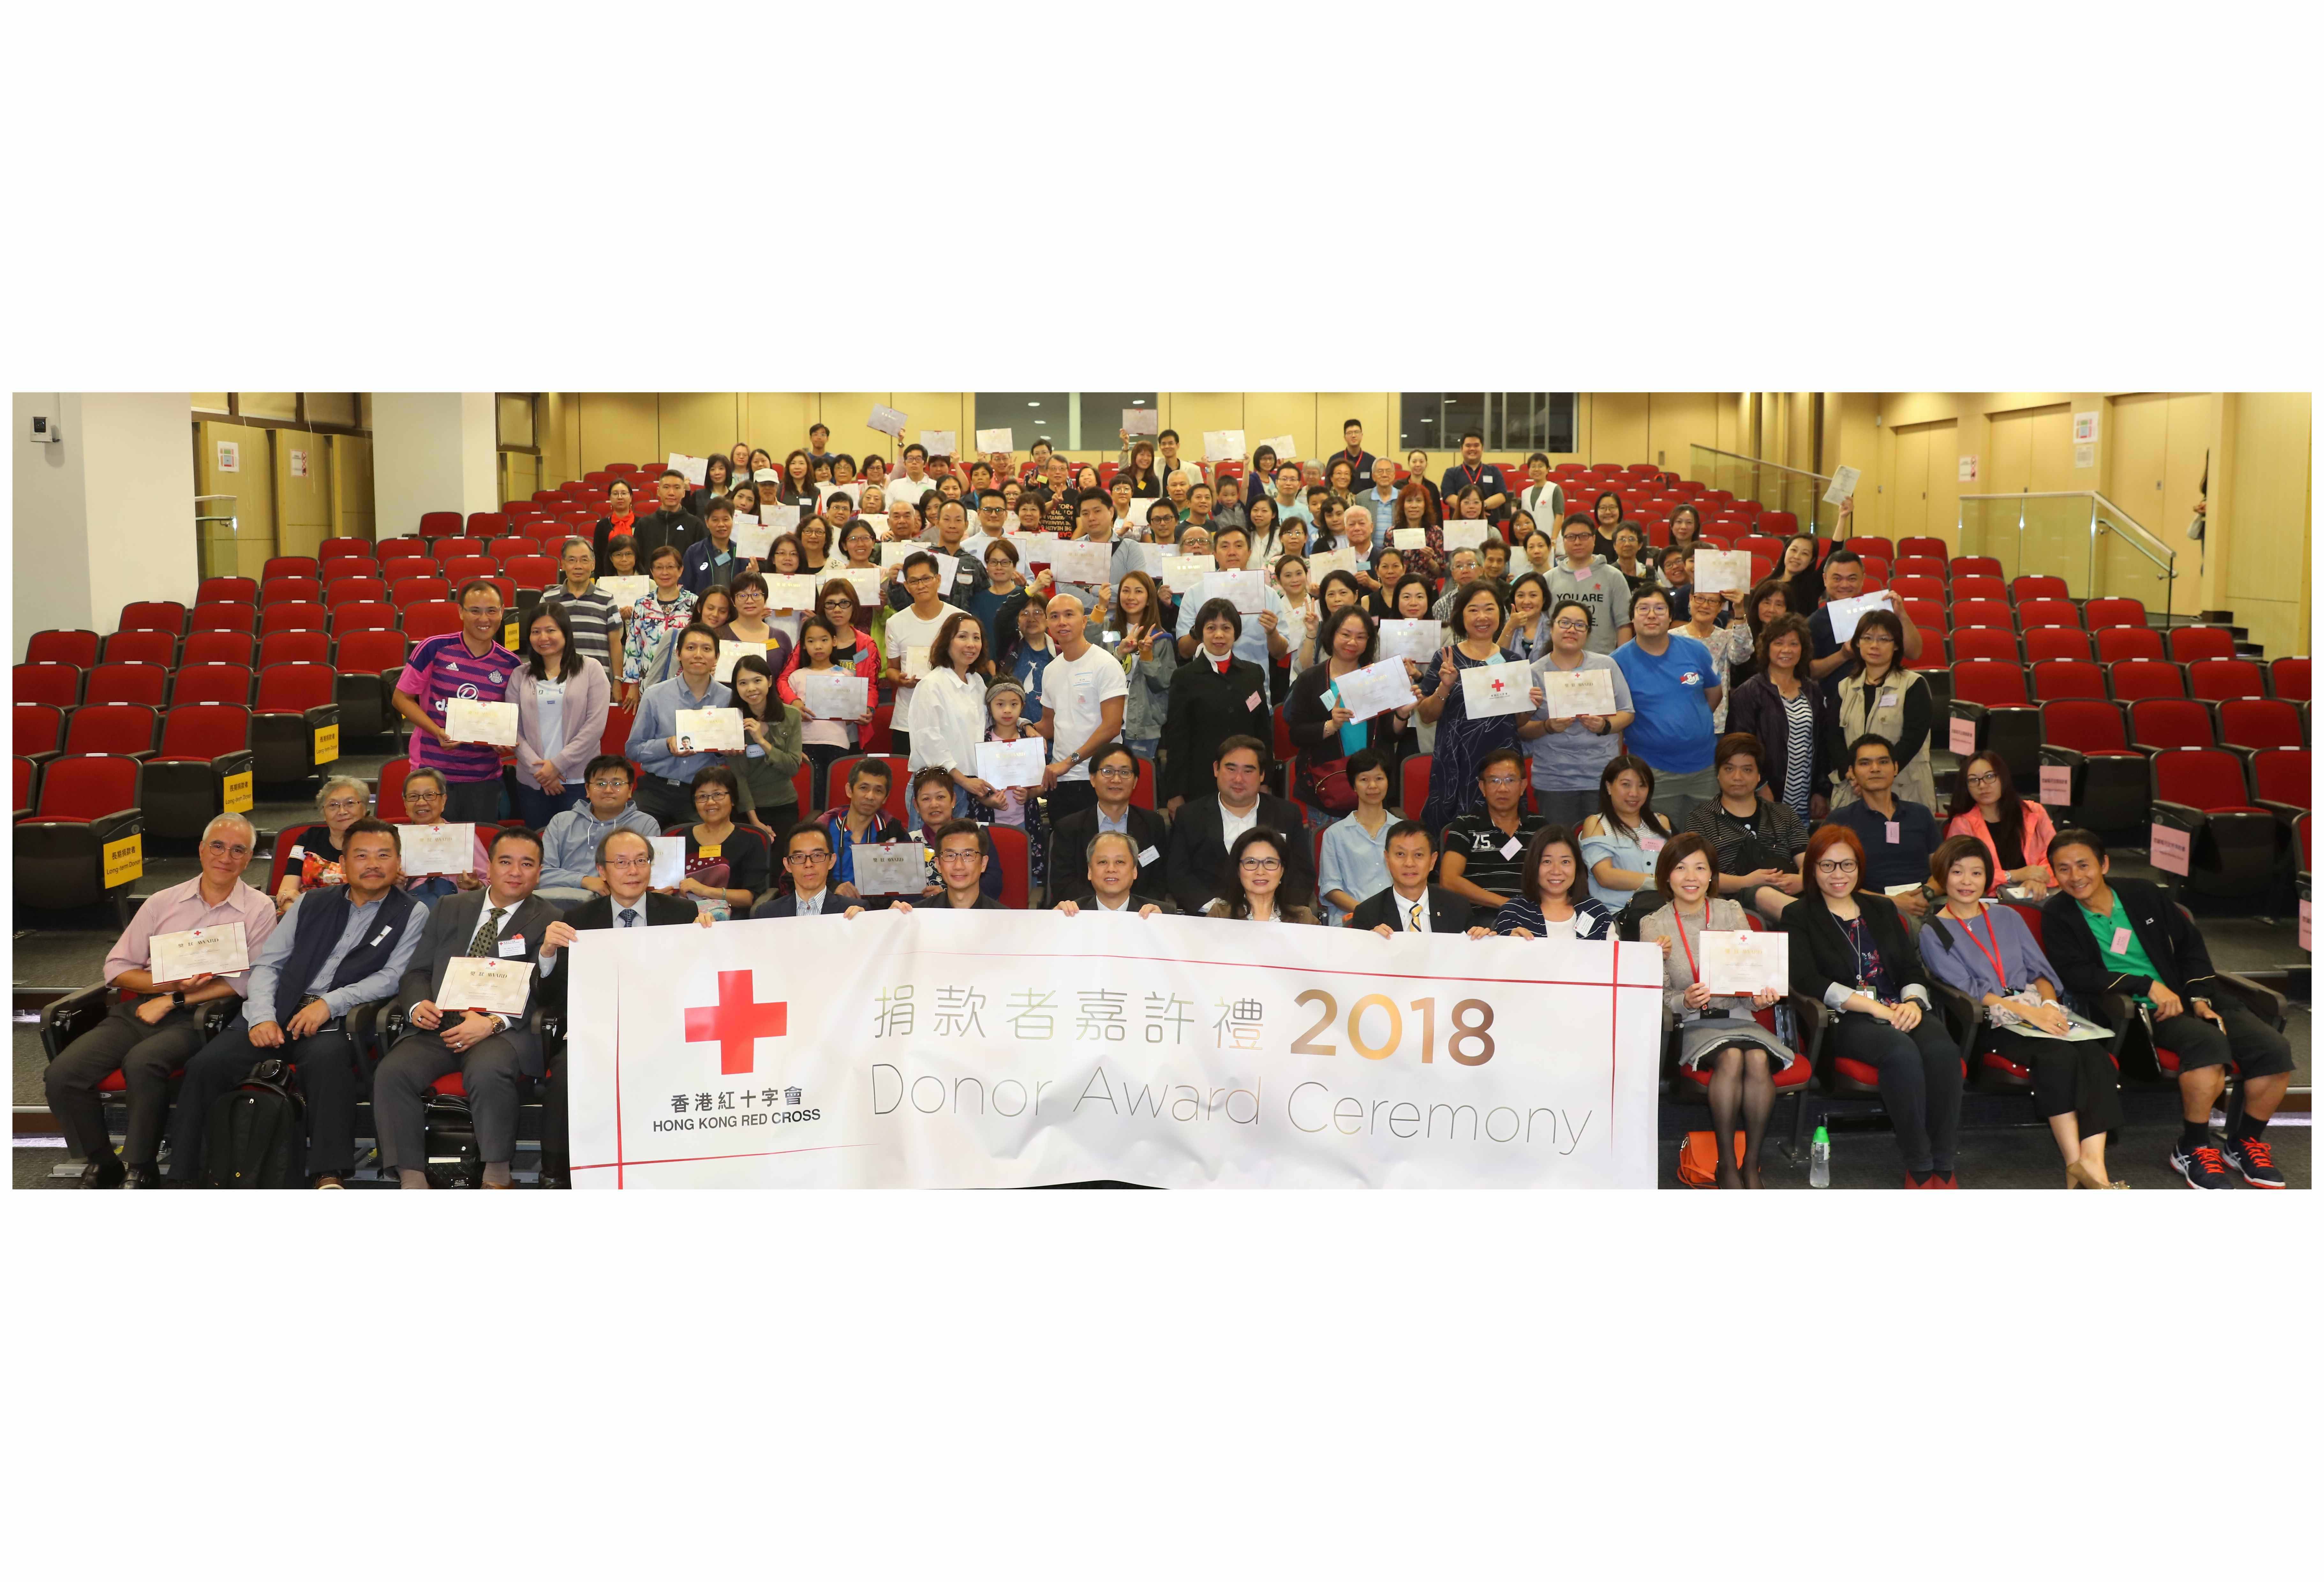 縮圖 香港紅十字會「捐款者嘉許禮2018」